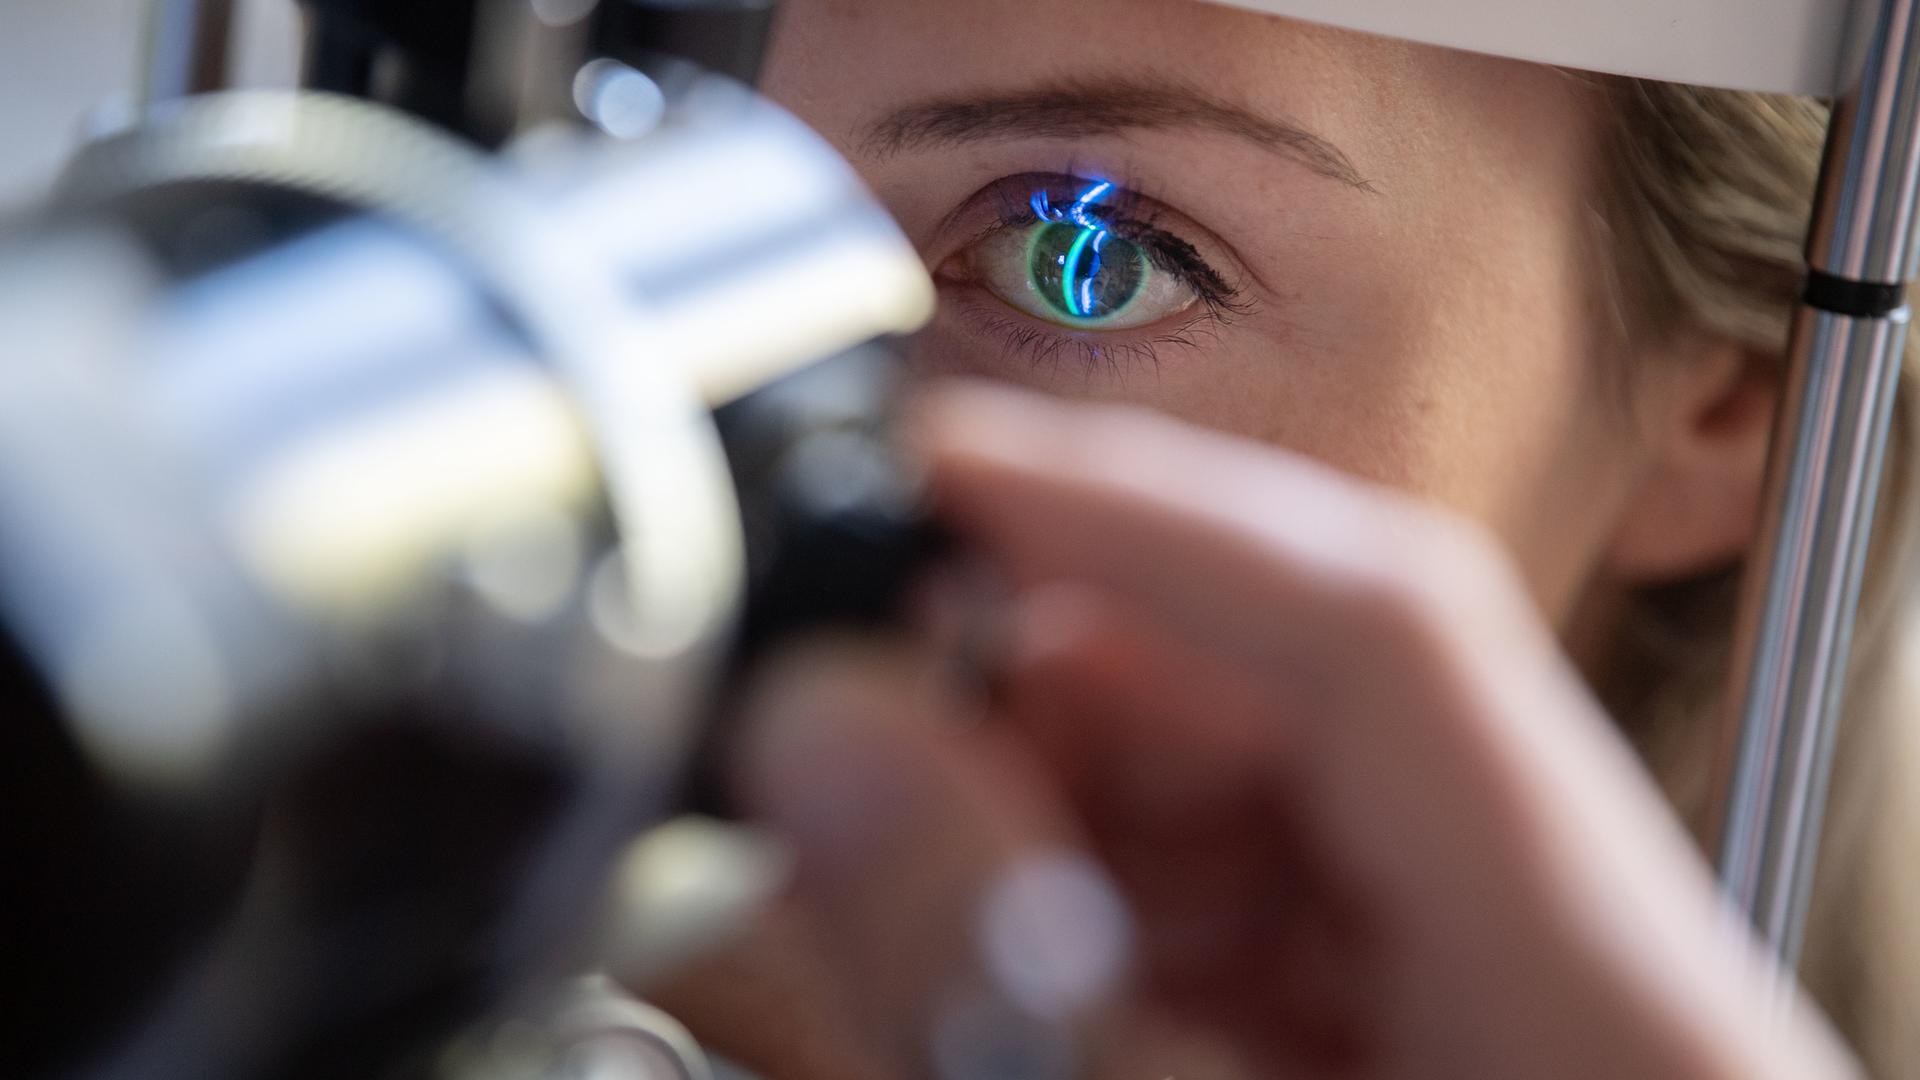 Schleichende Gefahr für das Sehvermögen: Der relativ verbreitete Typ-2-Diabetes kann zu schweren Augenerkrankungen führen. Die Mediziner raten den Betroffenen deswegen, regelmäßige Untersuchungen zu machen.